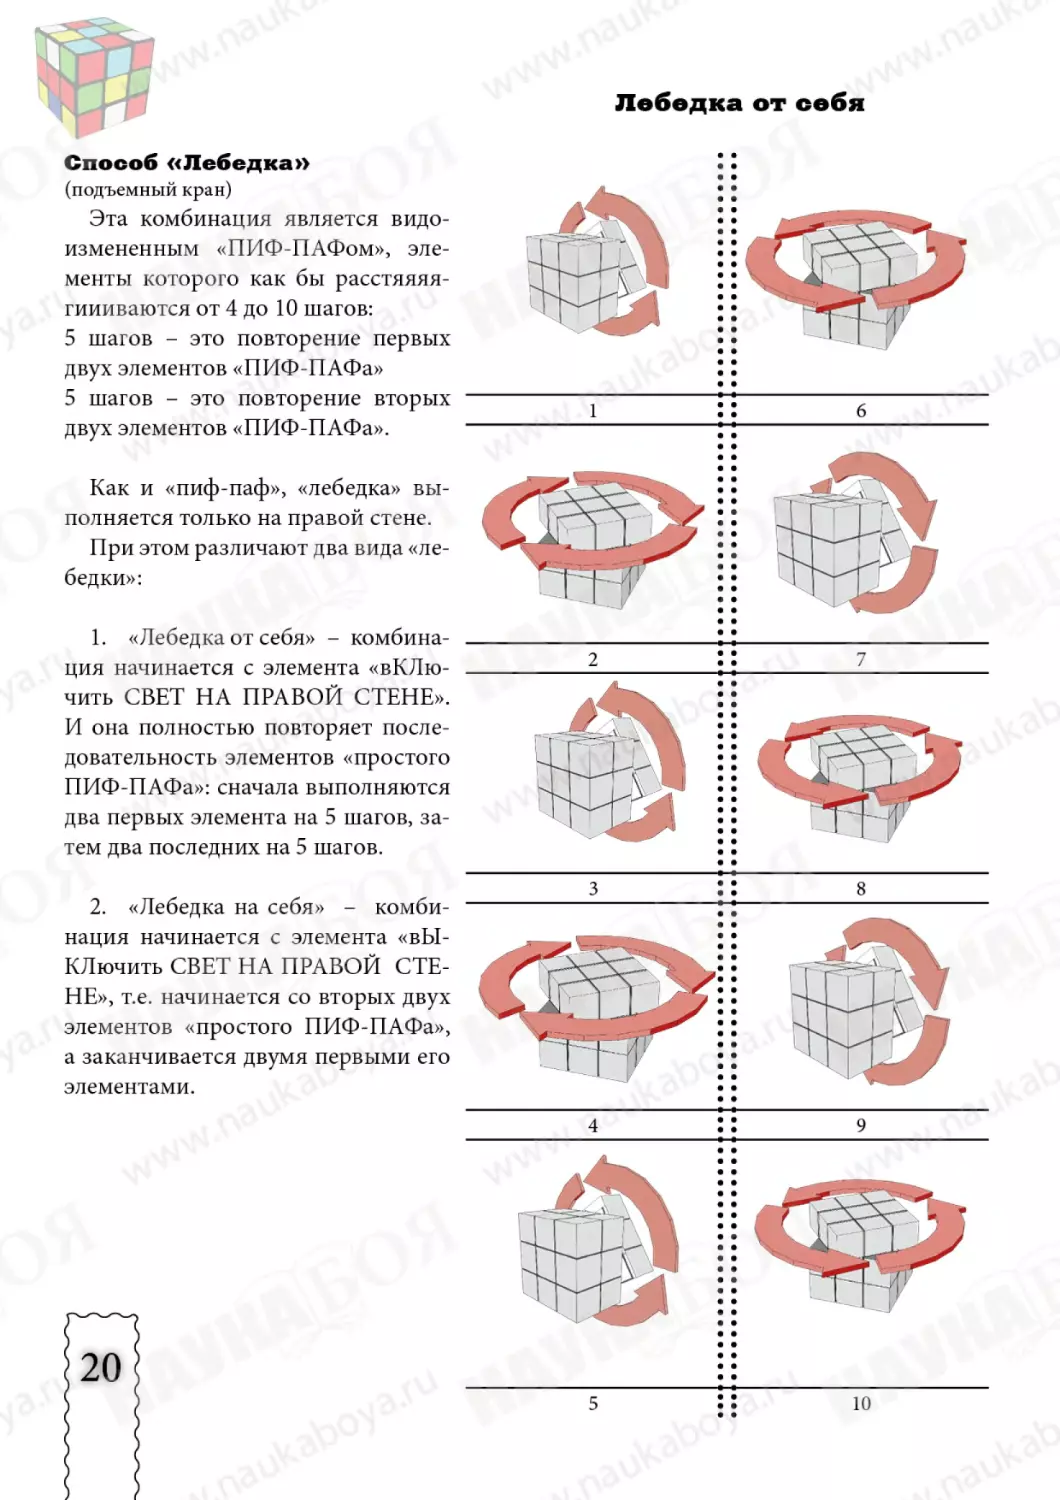 cube3x3x3_new20.pdf (p.20)